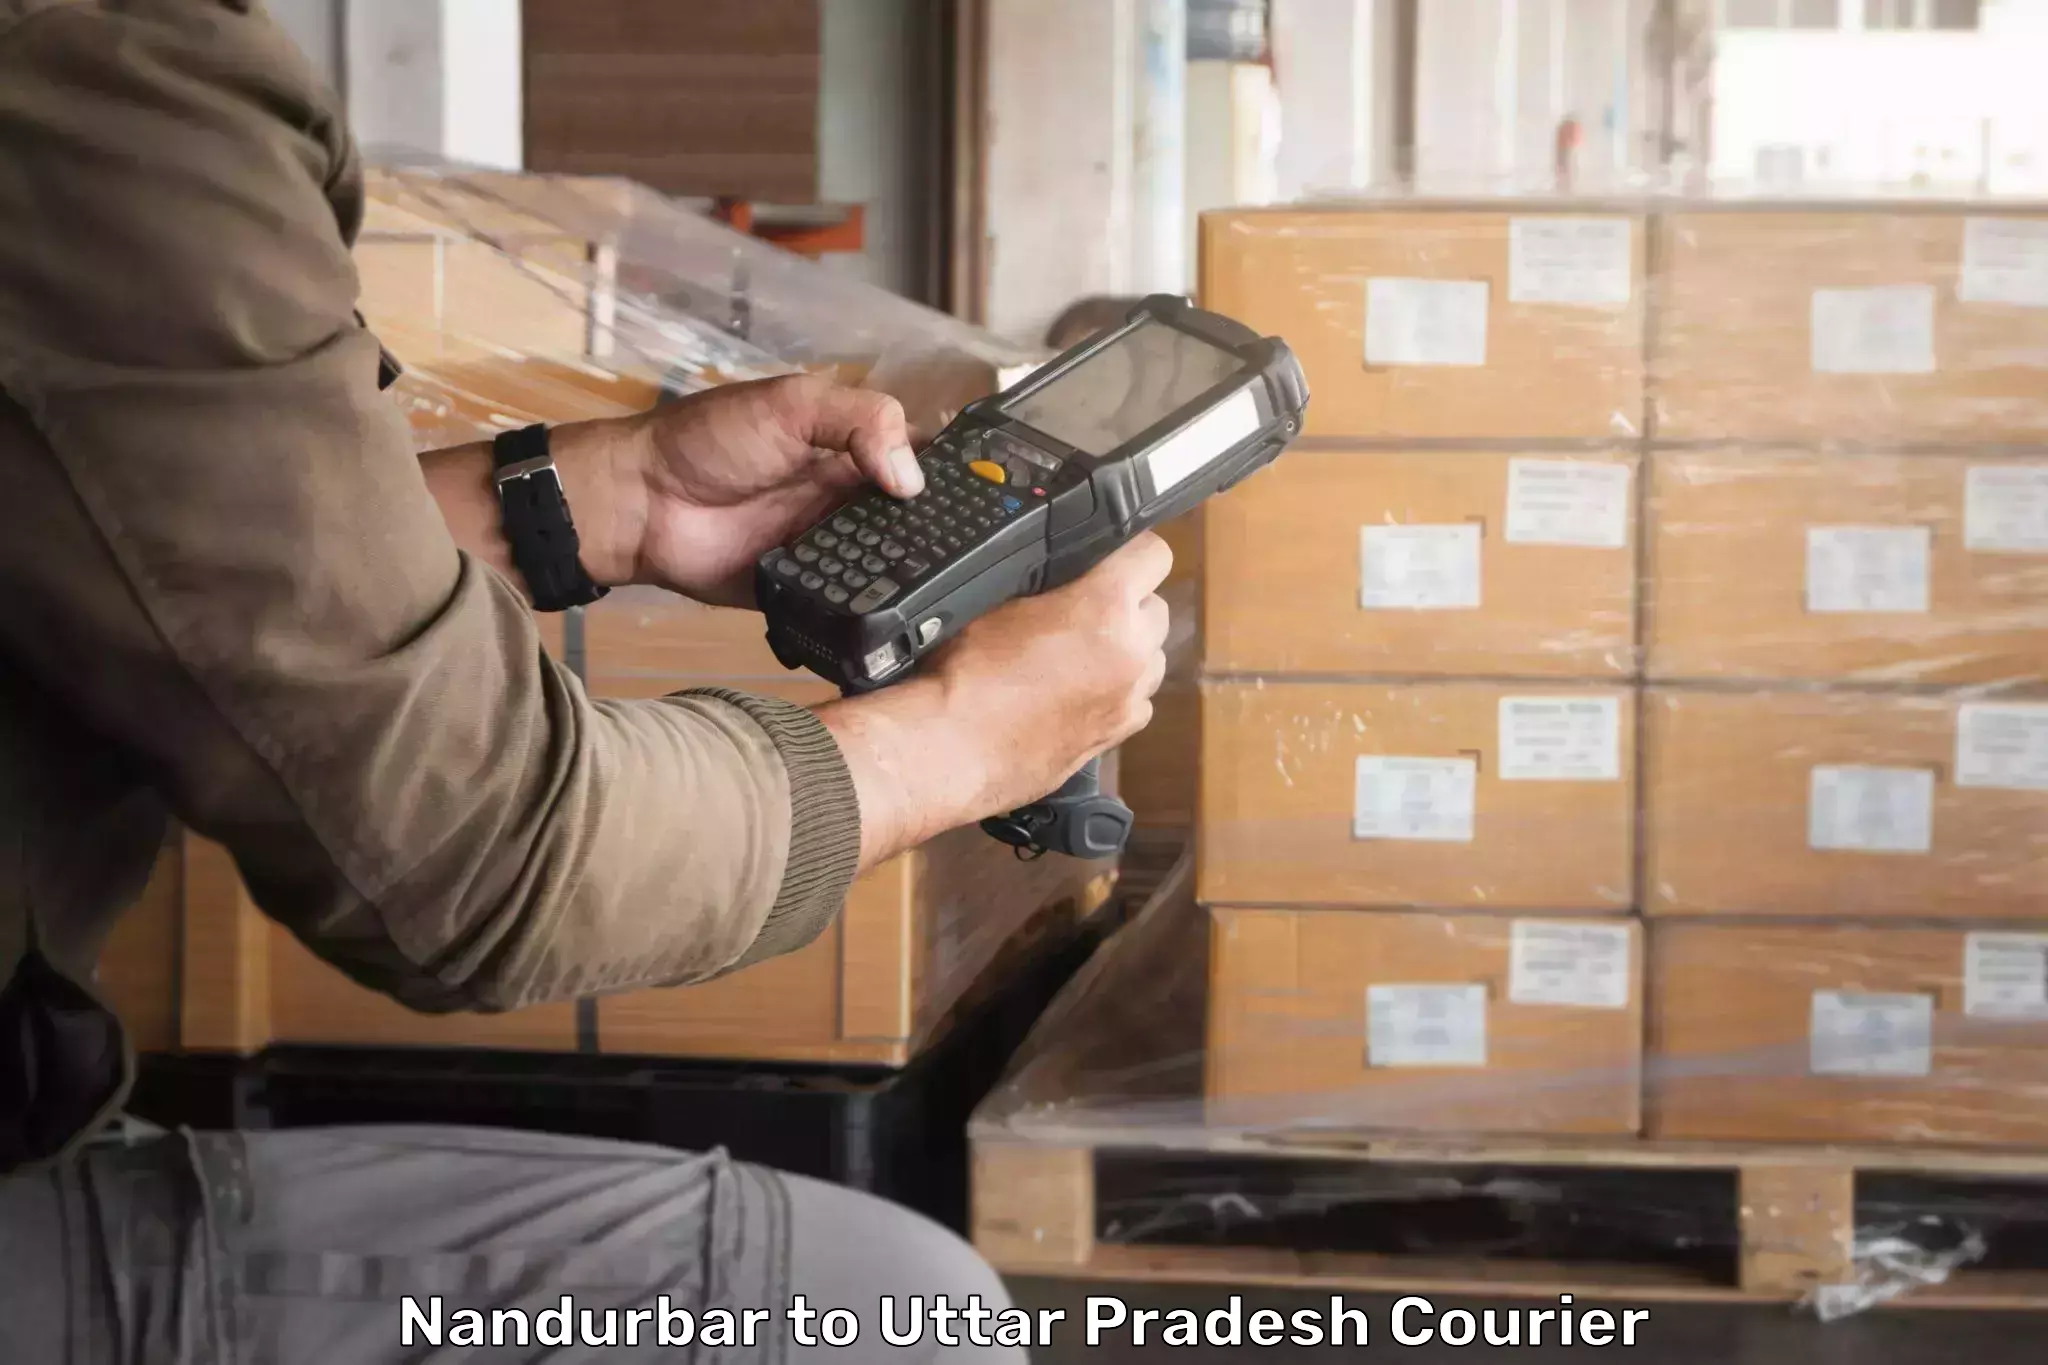 Courier app Nandurbar to Sitapur